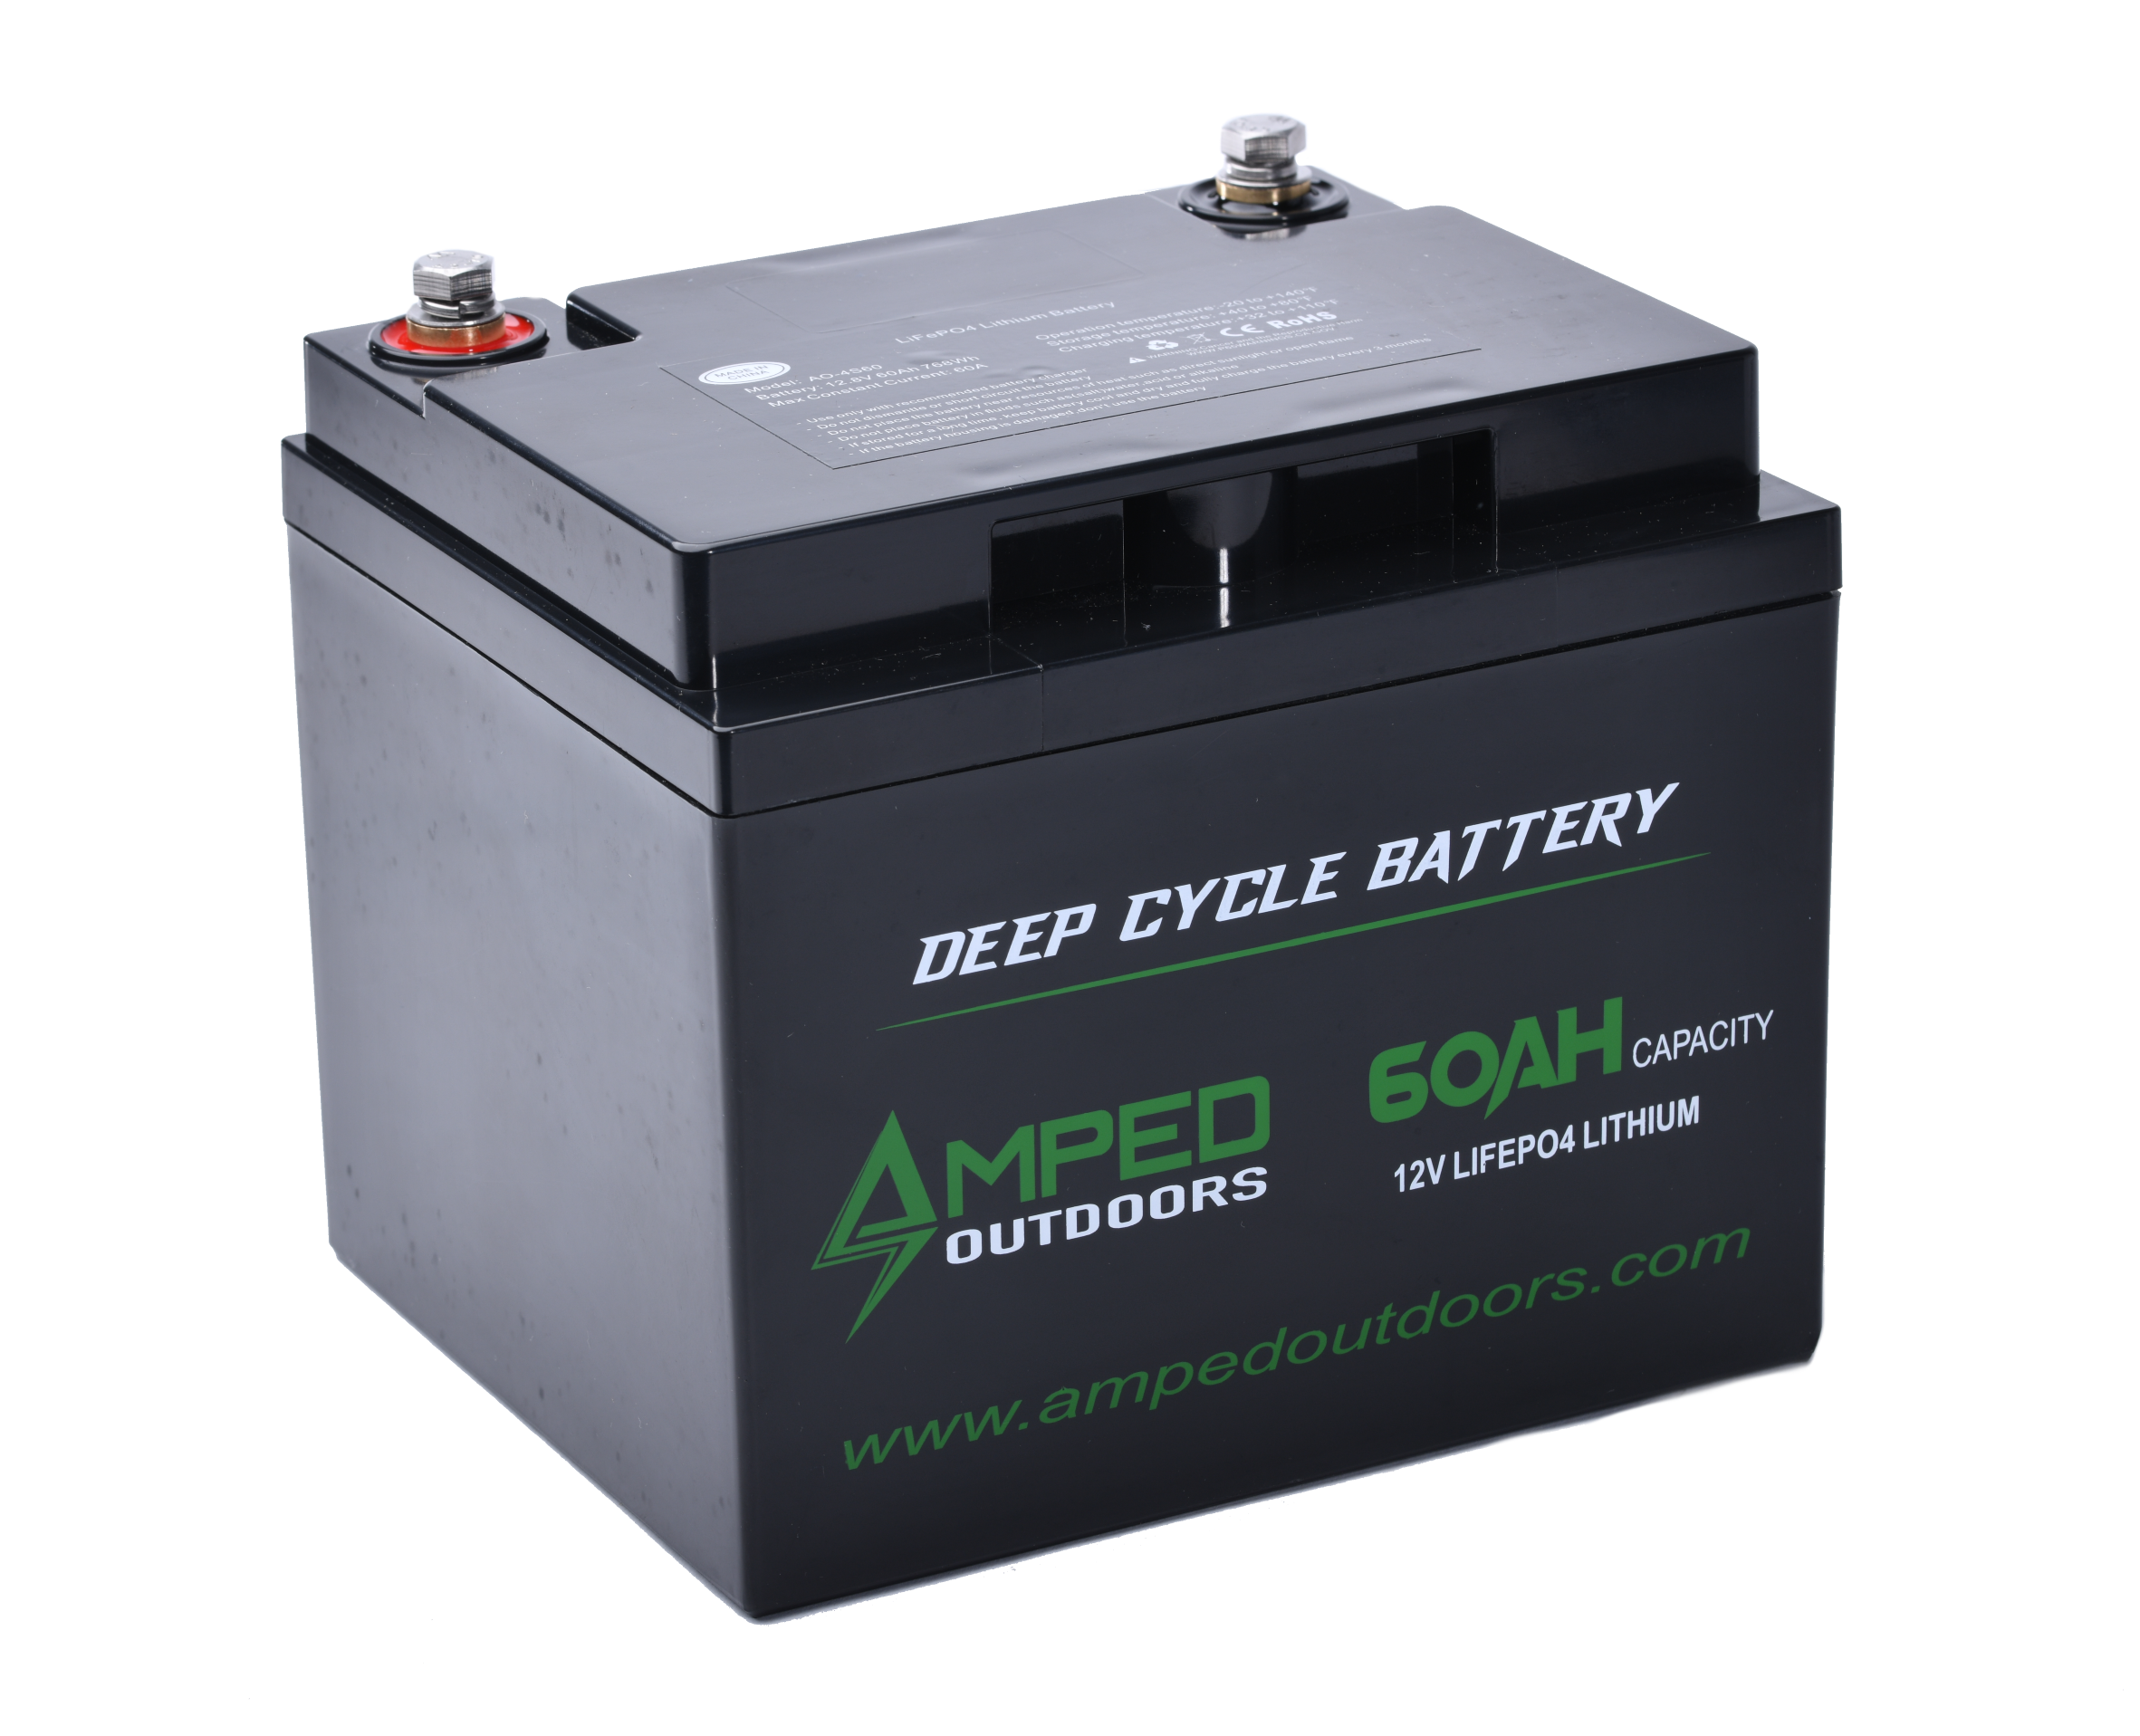 Batterie 60Ah 12V Lithium Carbest